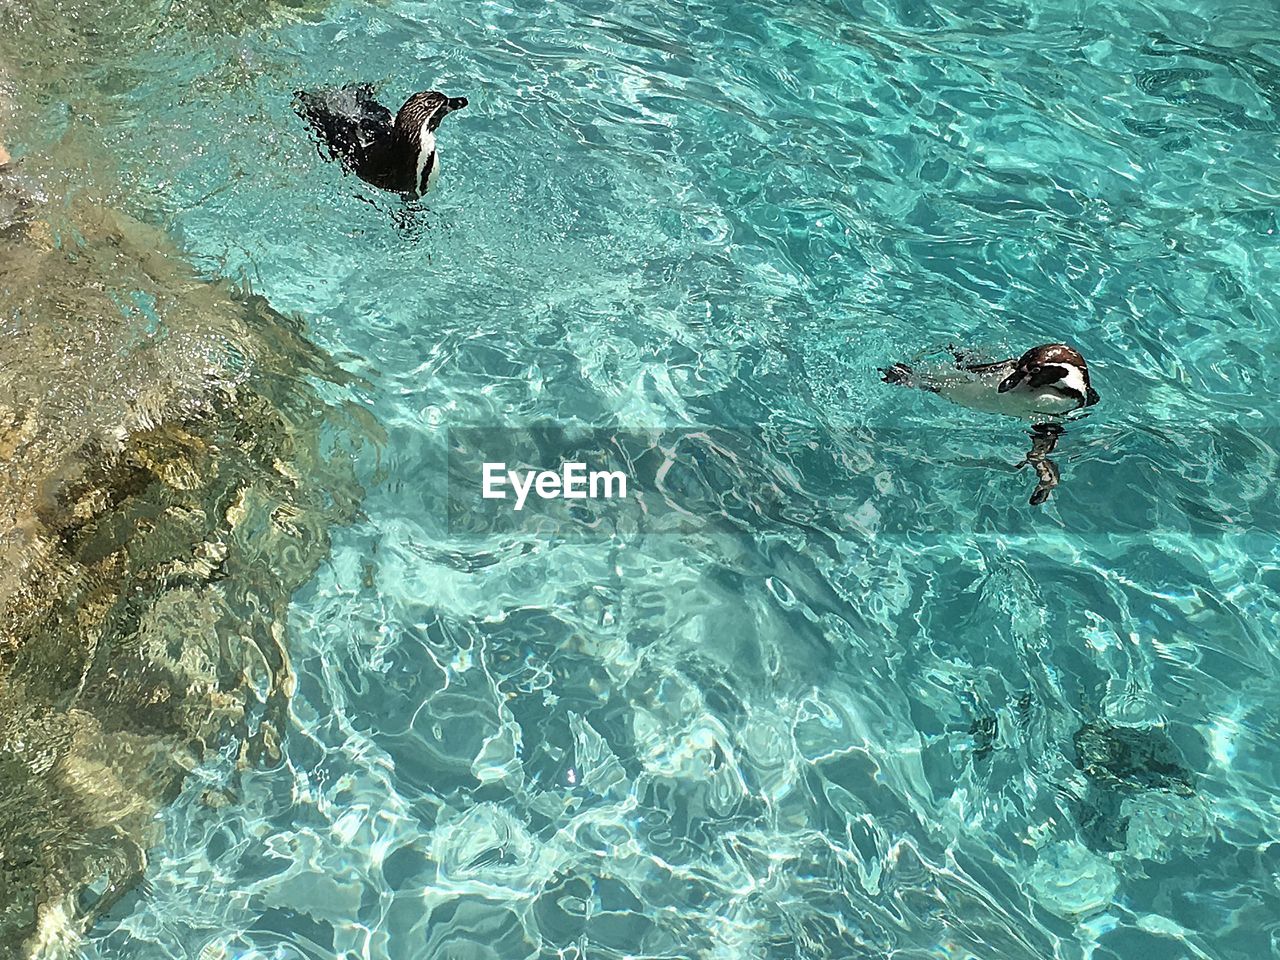 Penguins in pool